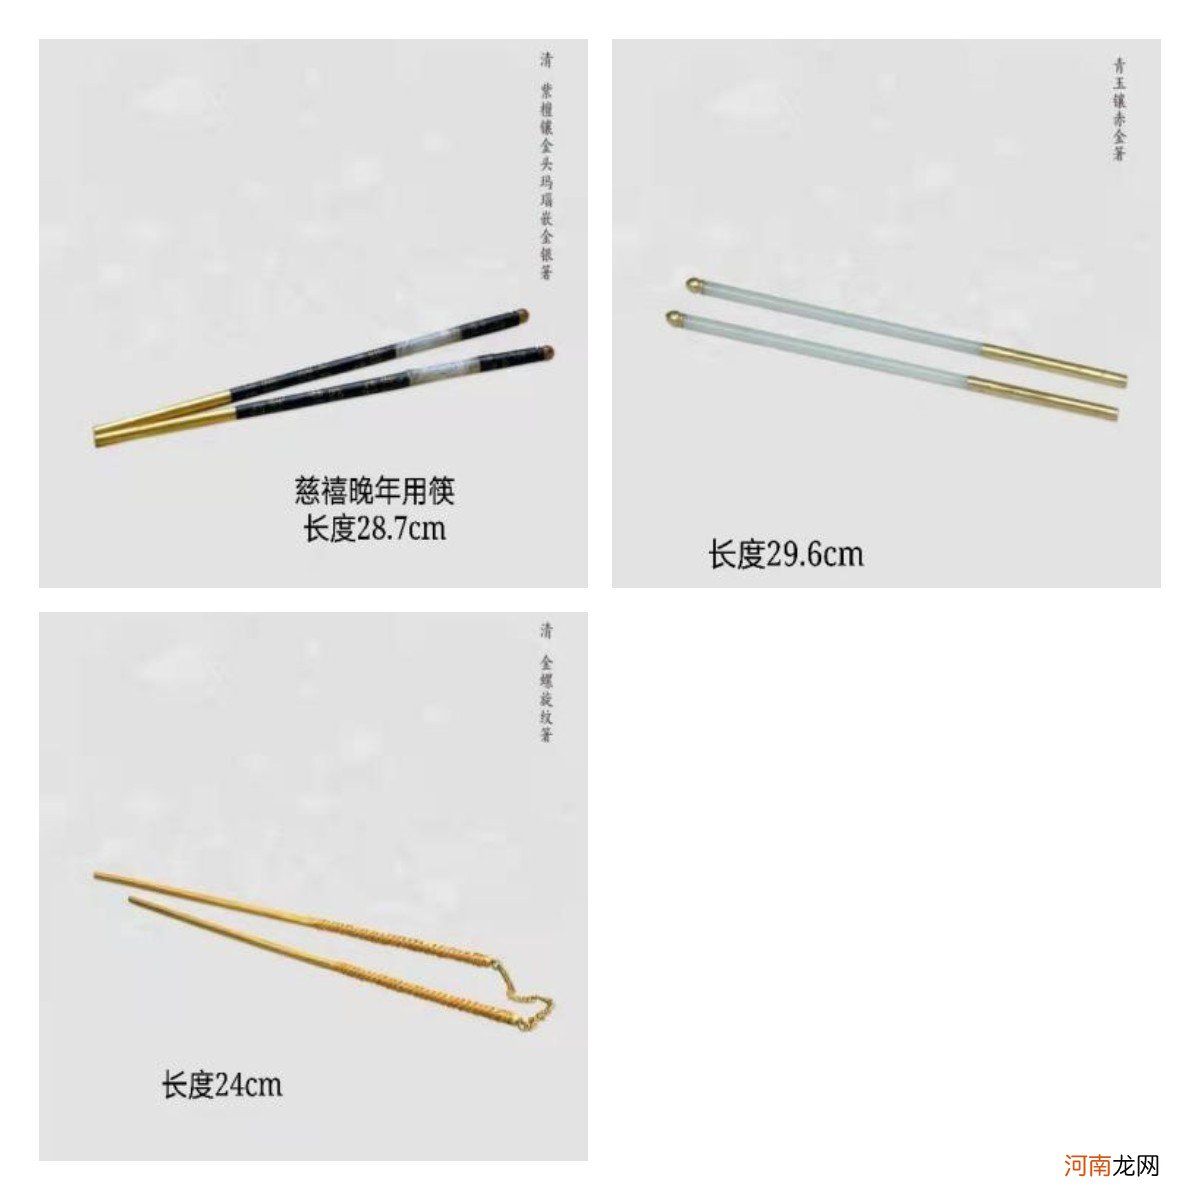 一根筷子有多长有多少厘米 筷子多长是标准